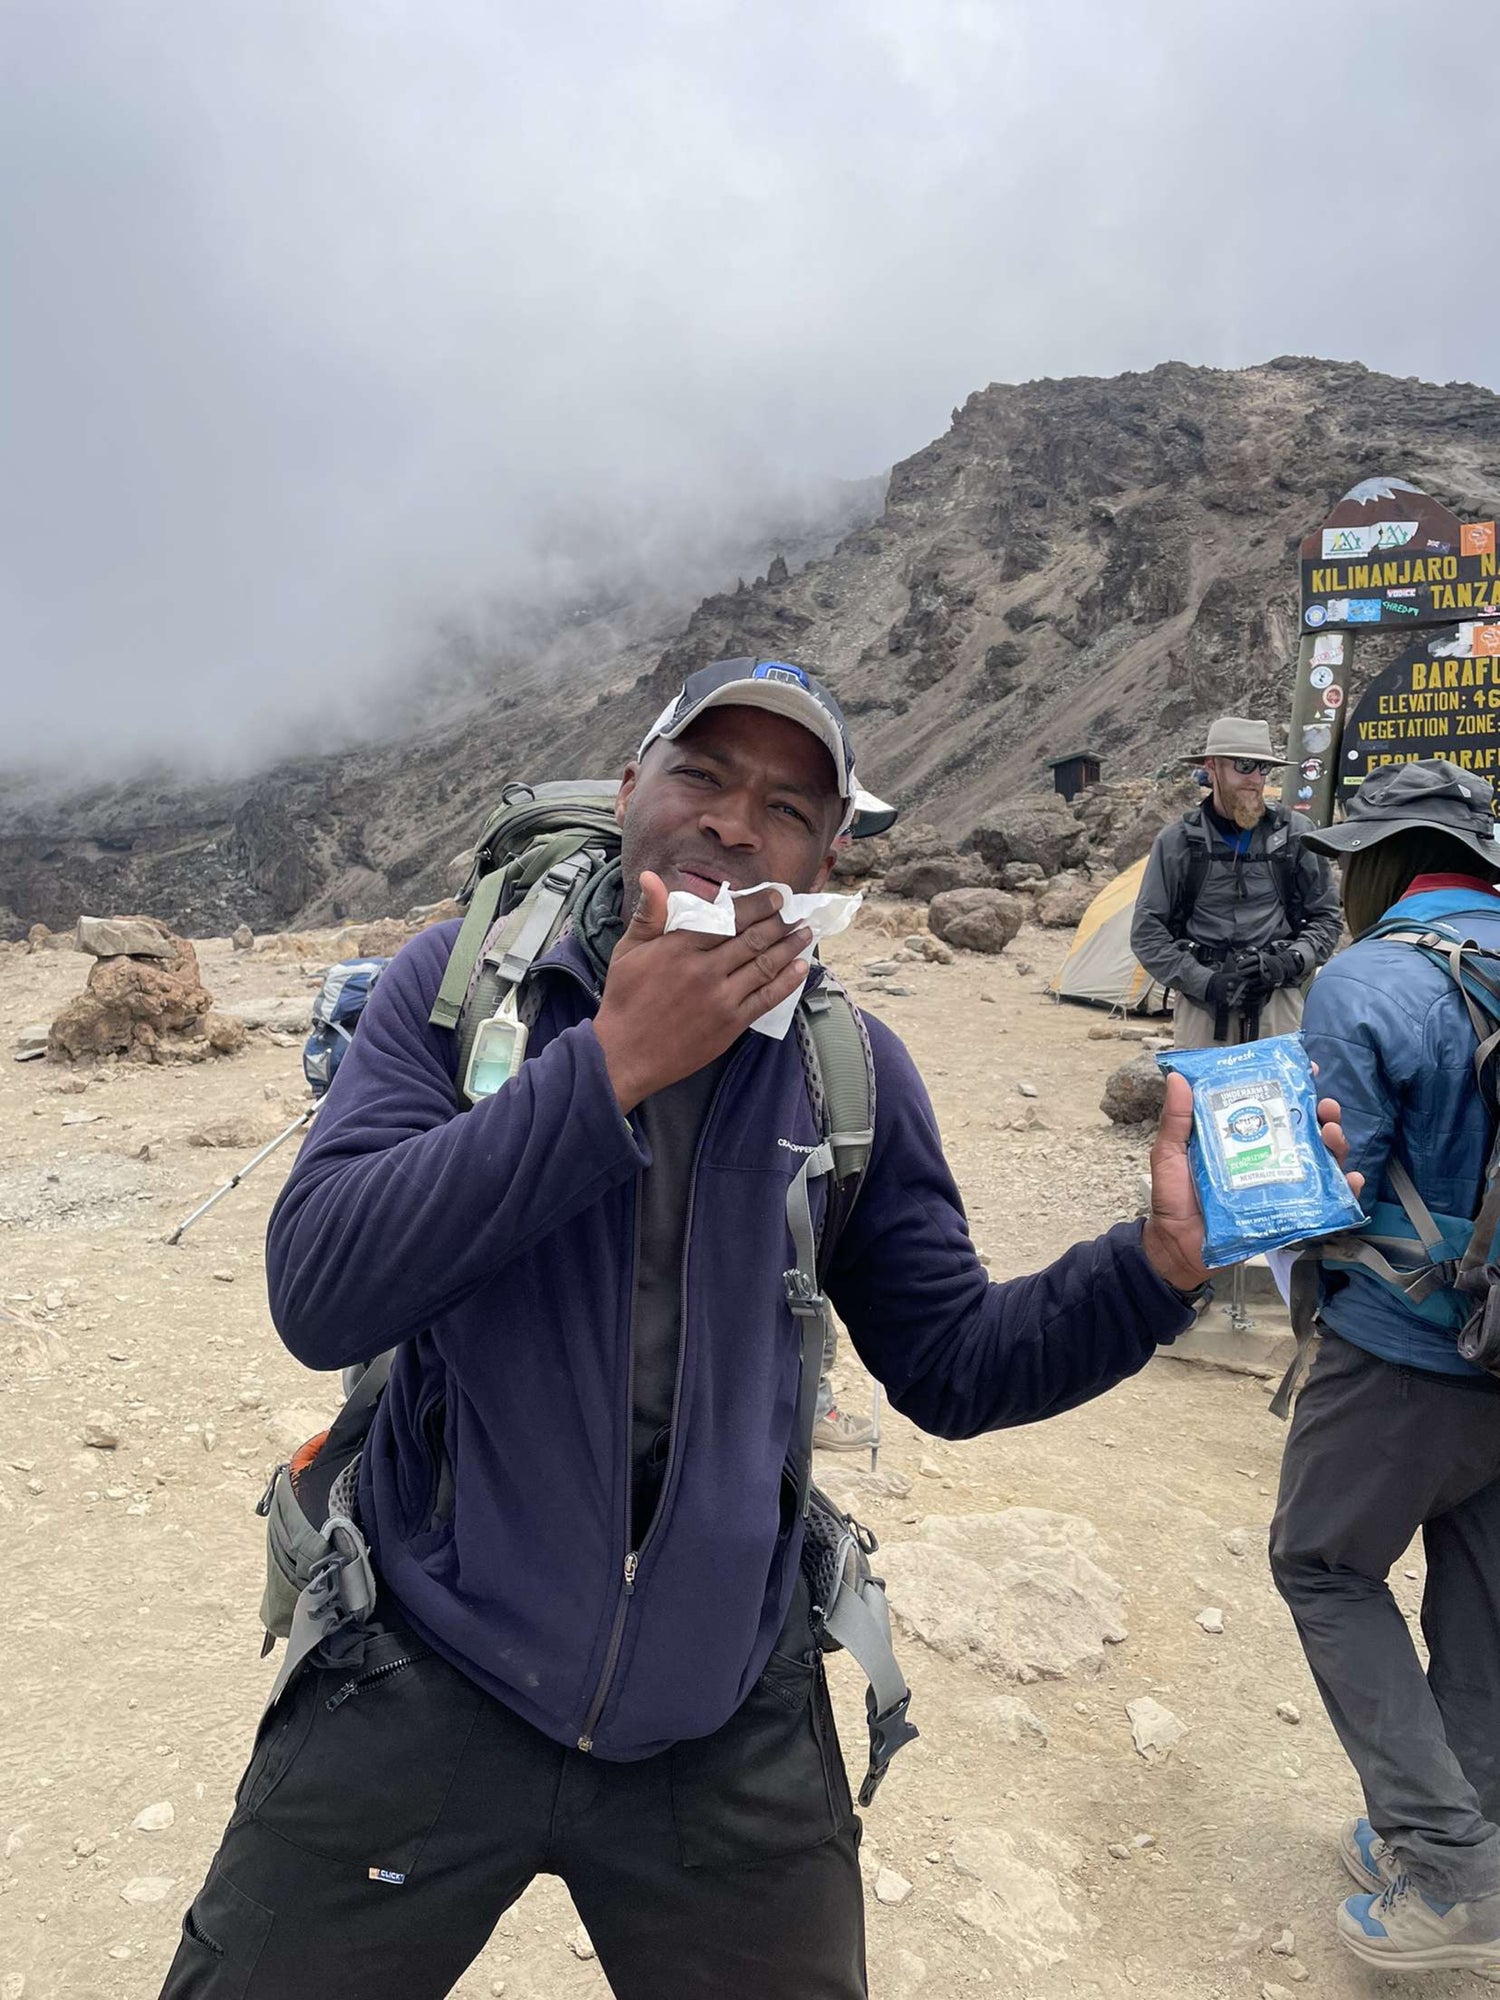 Game Face Wipes at Mount Kilimanjaro